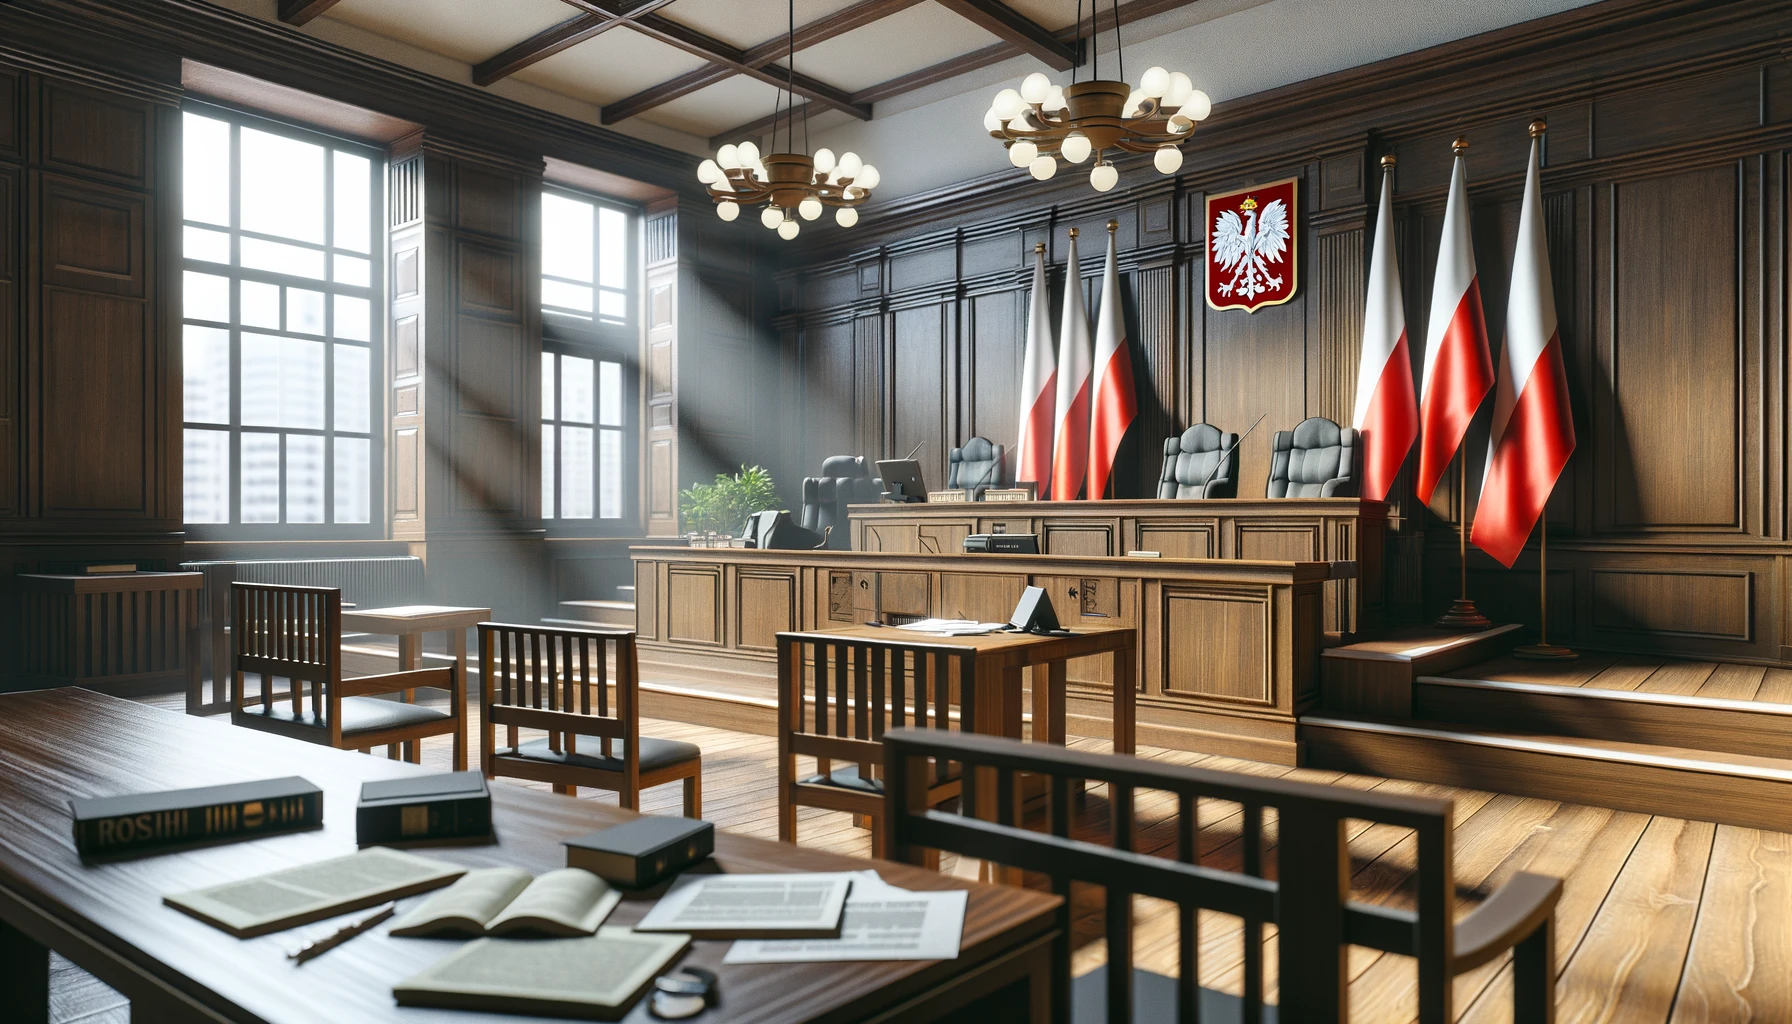 Sędzia – Przypadek Tomasza Szmydta